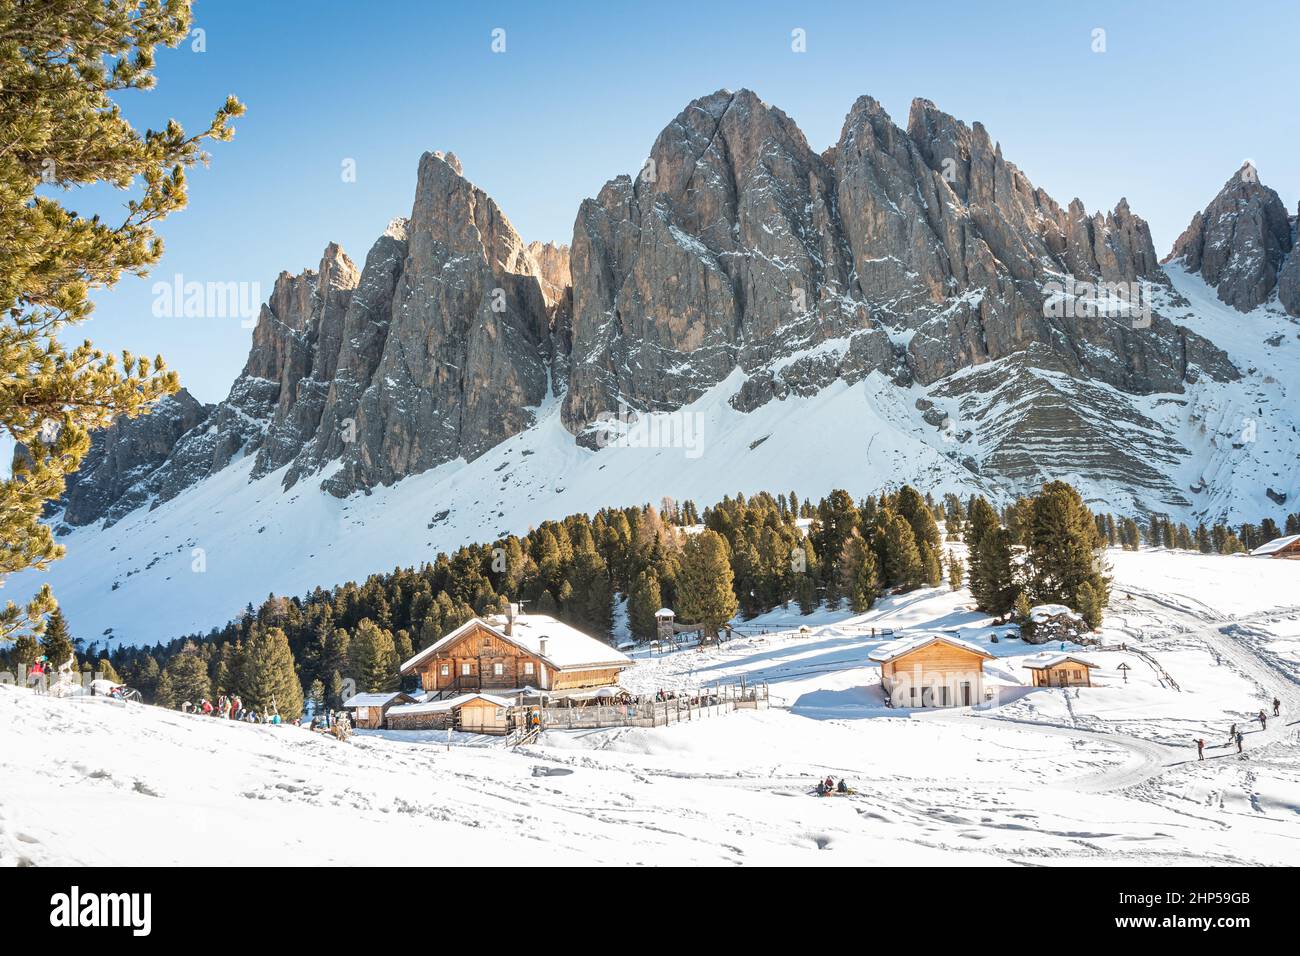 La catena montuosa delle Odle che separa la valle di Funes dalla Val Gardena prende dal rifugio Gaisler con la bandiera dell'Alto Adige, le Alpi italiane, le Dolomiti Foto Stock